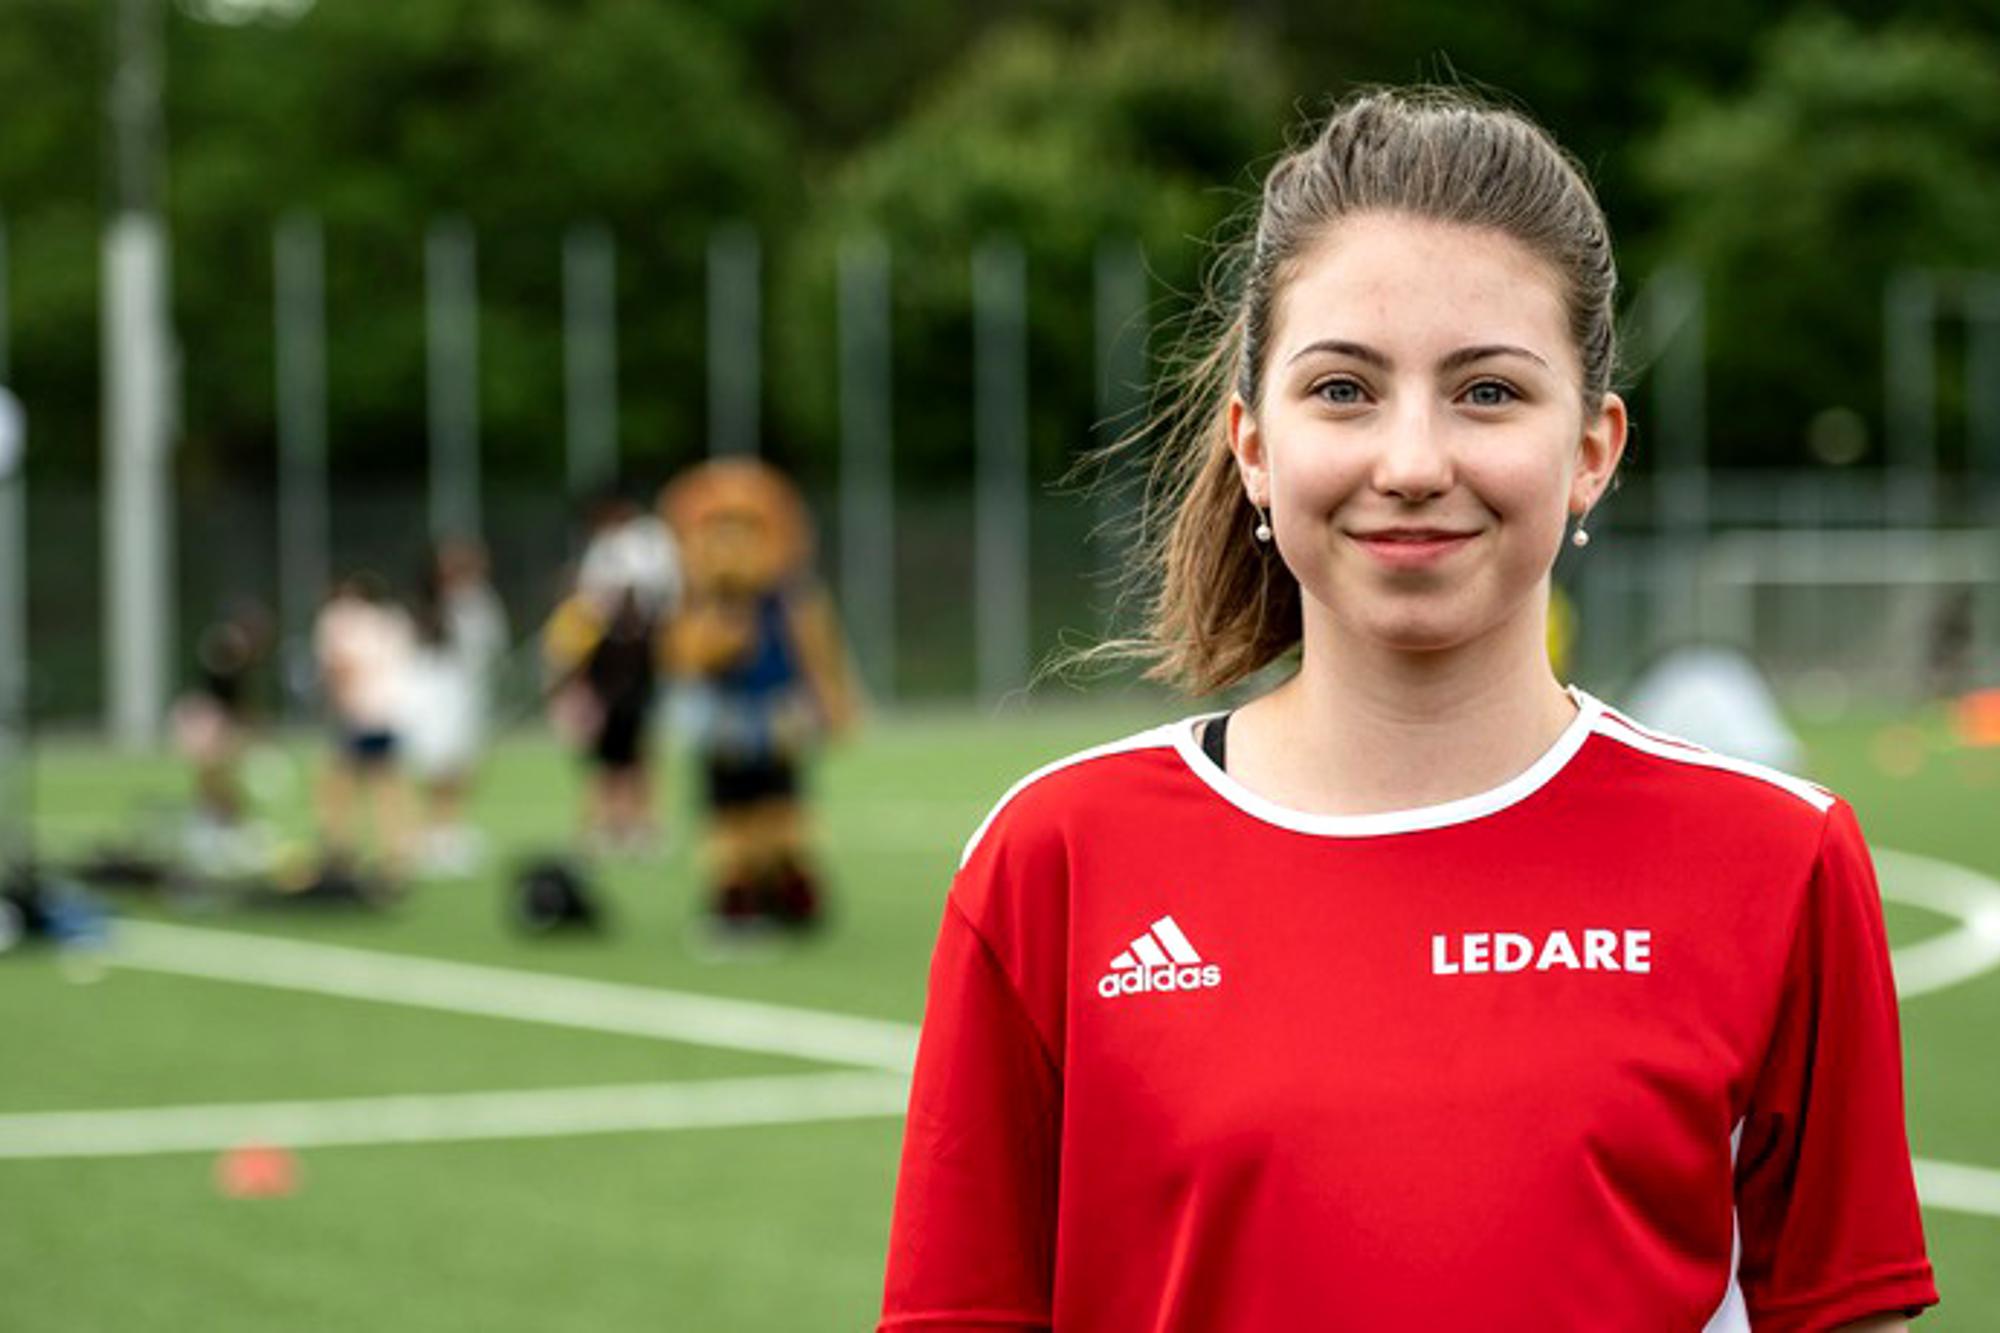 En bild på Julia Kaslin som är ny som ledare. Hon står på en fotbollsplan och bär en tröja med texten "Ledare" på.